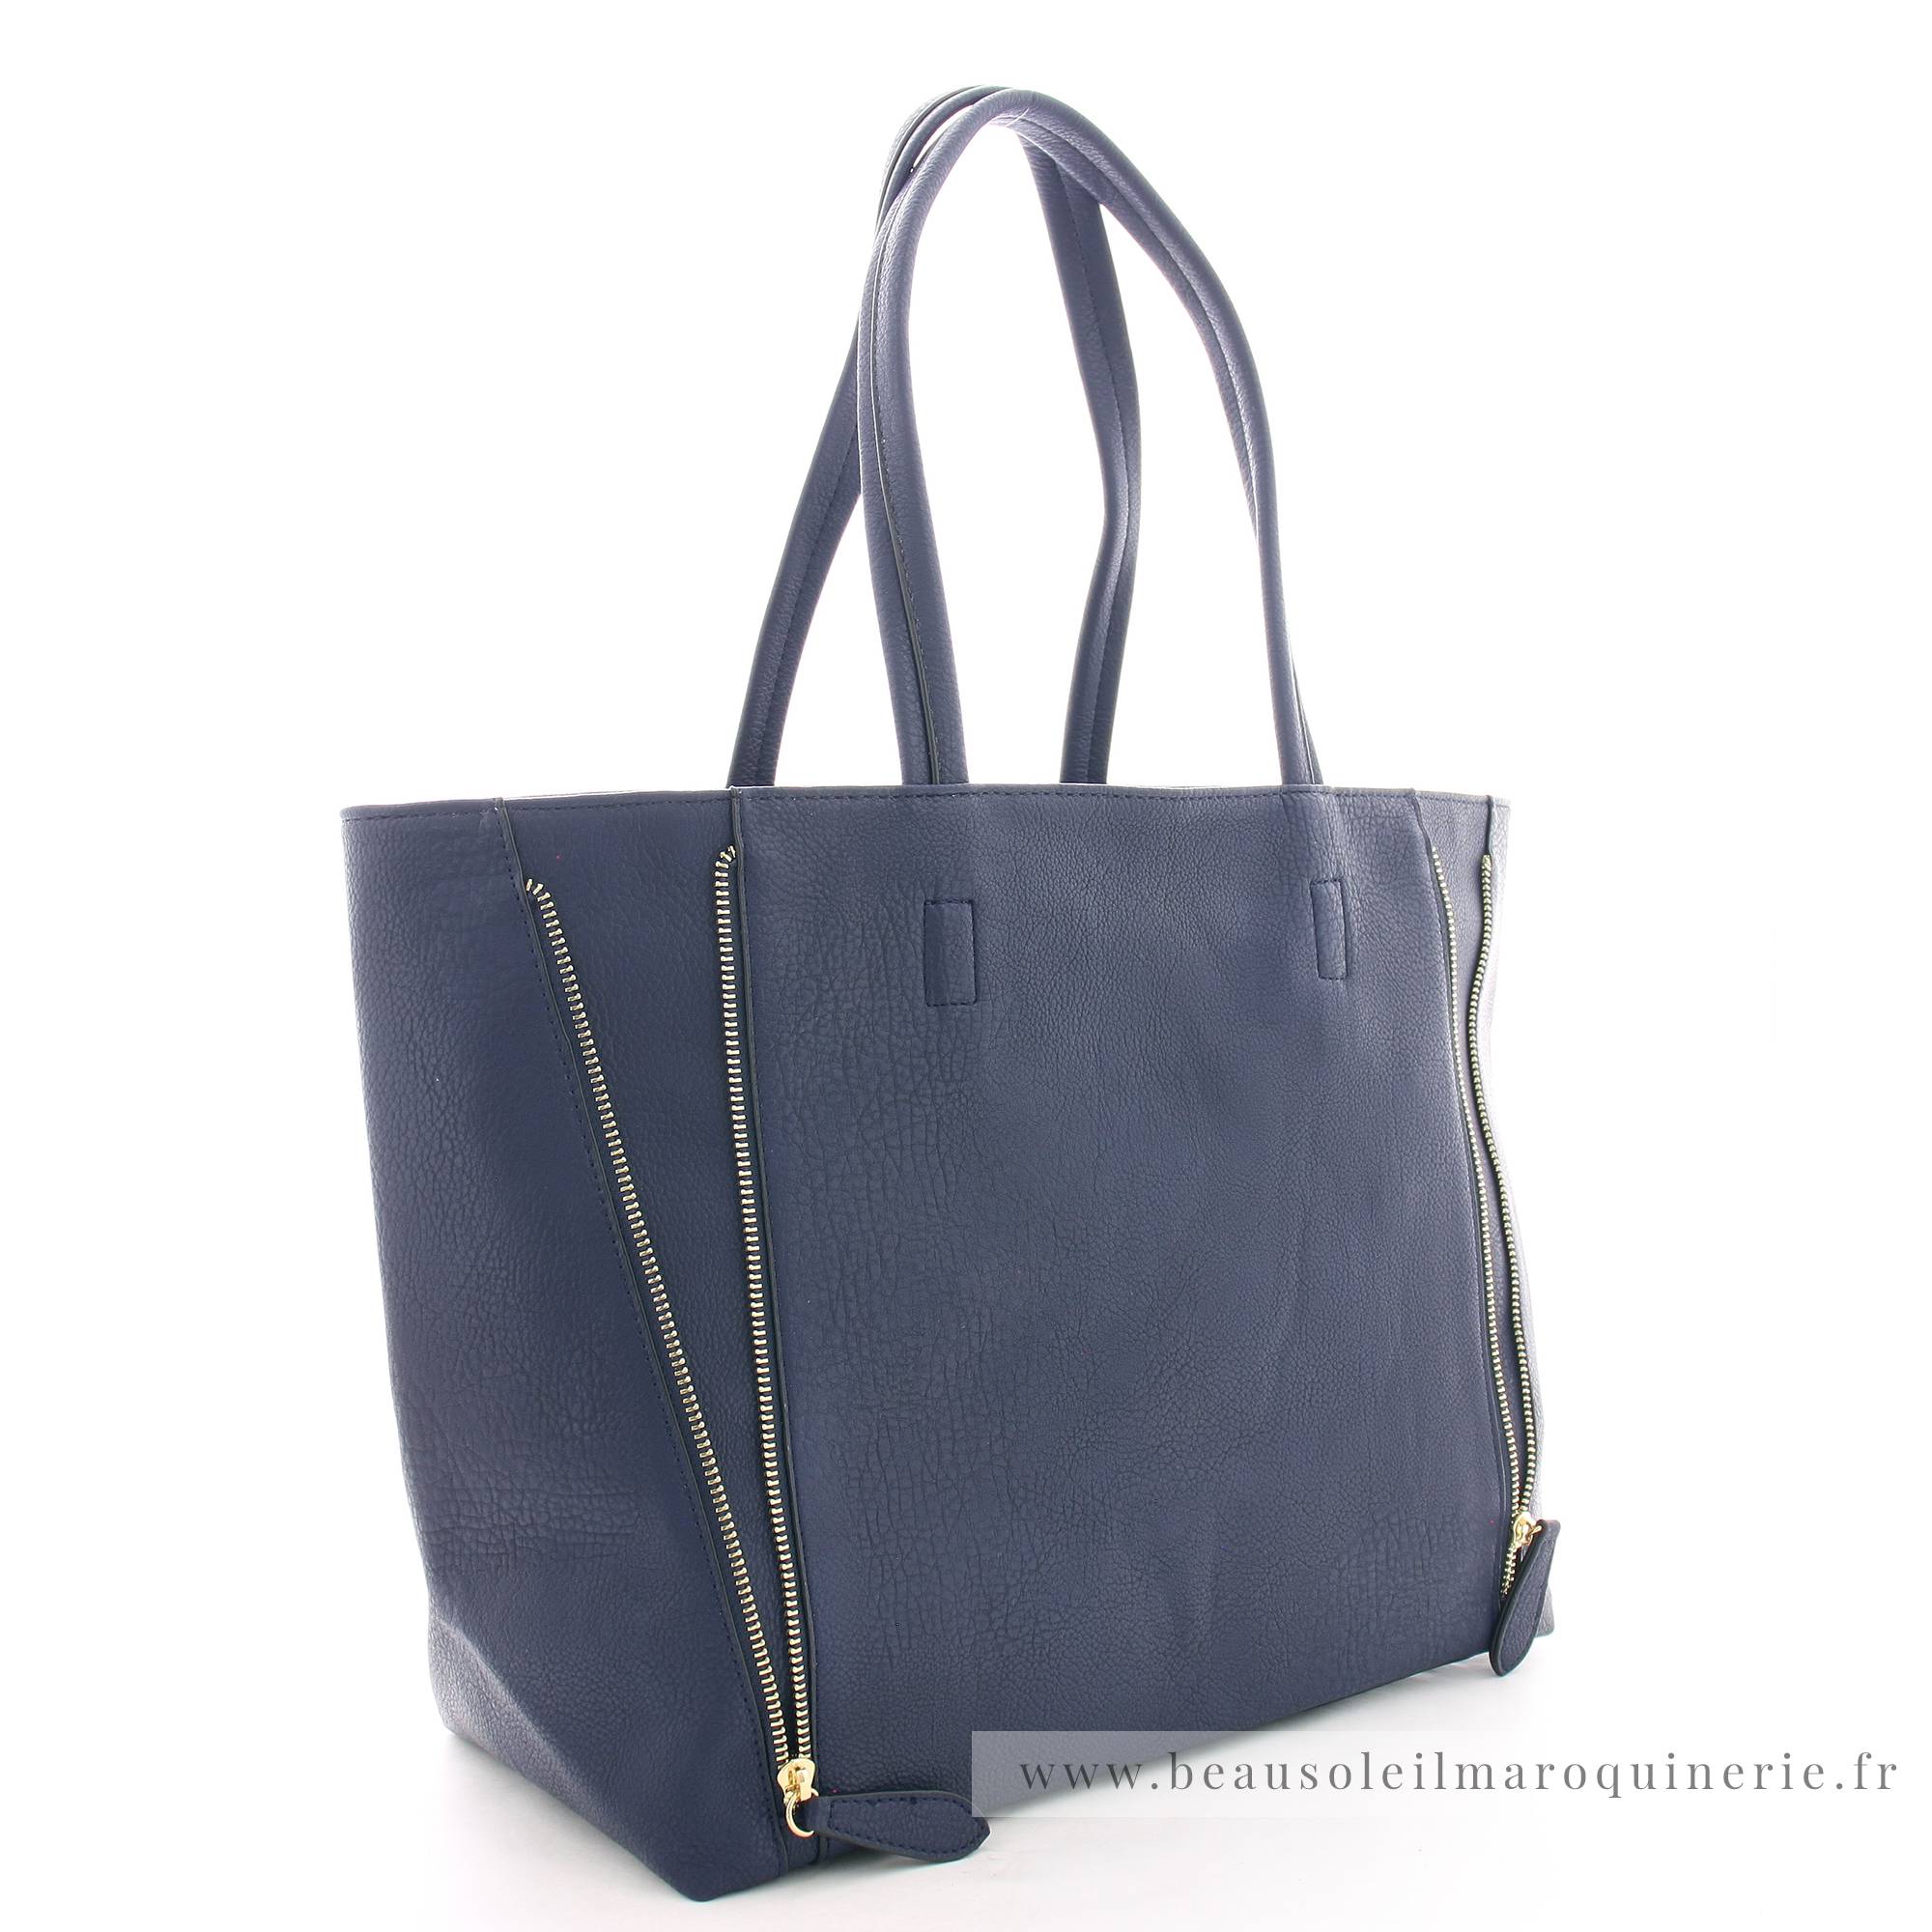 Grand sac shopping Fuchsia porté épaule Cara F1598-1BM couleur bleu marine vue de profil